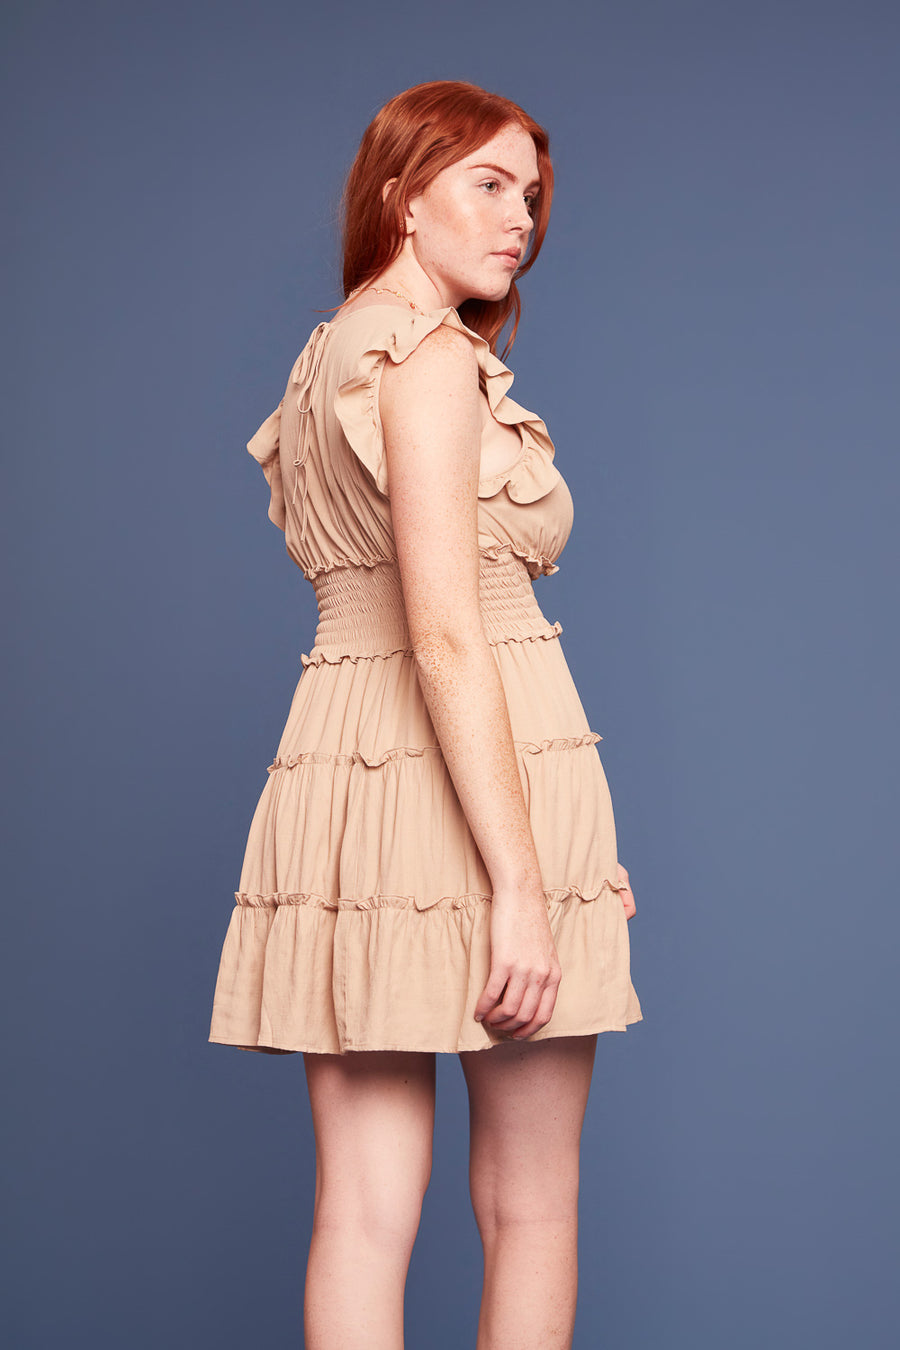 Sesame Flair Shoulder Dress - Trixxi Clothing